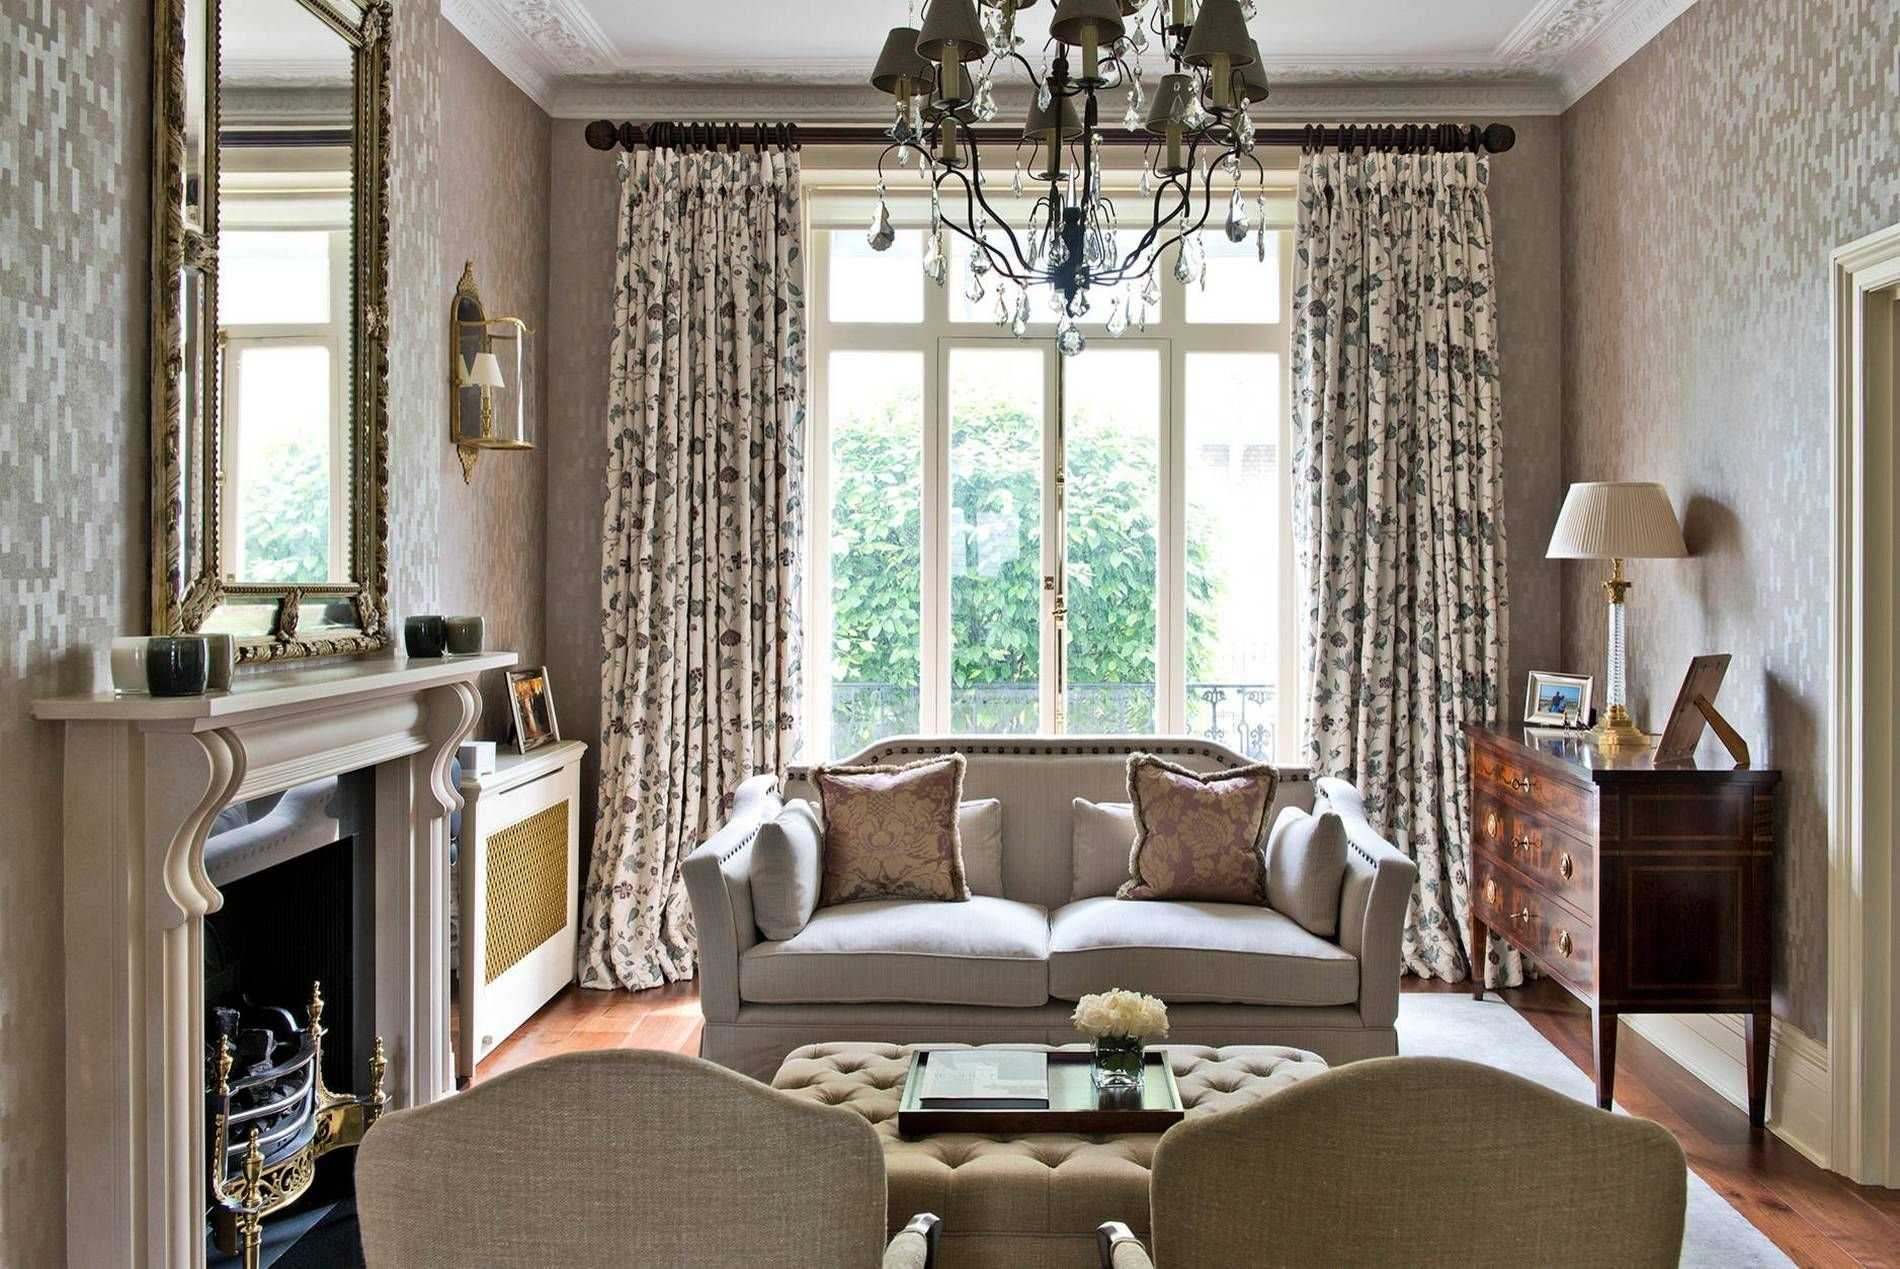 Лондонские шторы (42 фото): английские занавески в стиле лондона для кухни, спальни и гостиной